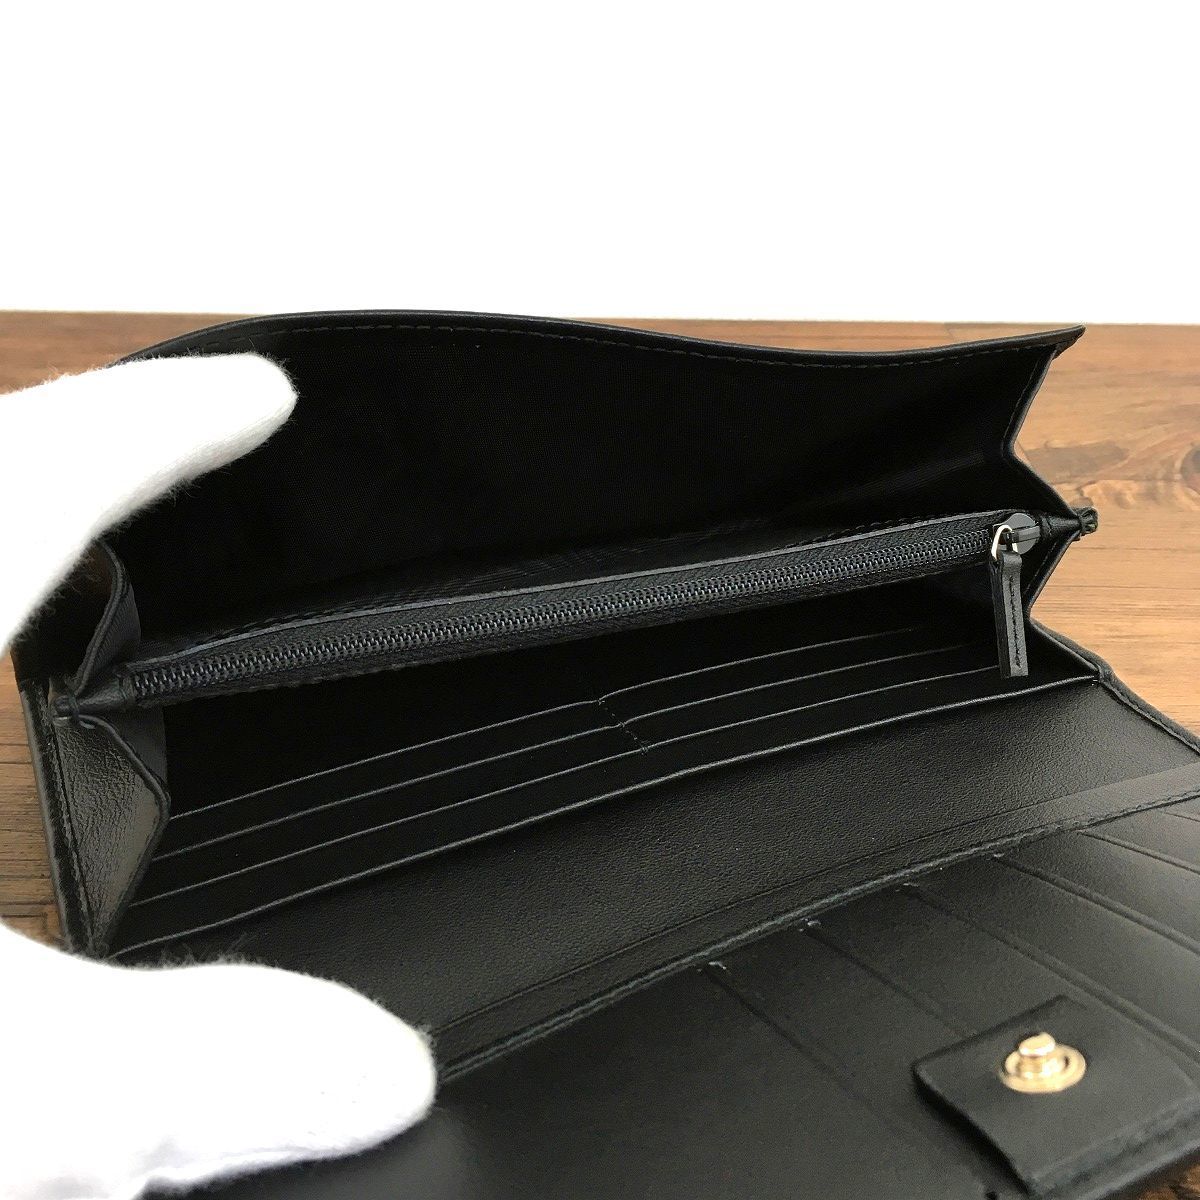 激安格安割引情報満載 長財布 ダブルファスナー スマホケース 財布 大容量 モノクロ 白黒 新品